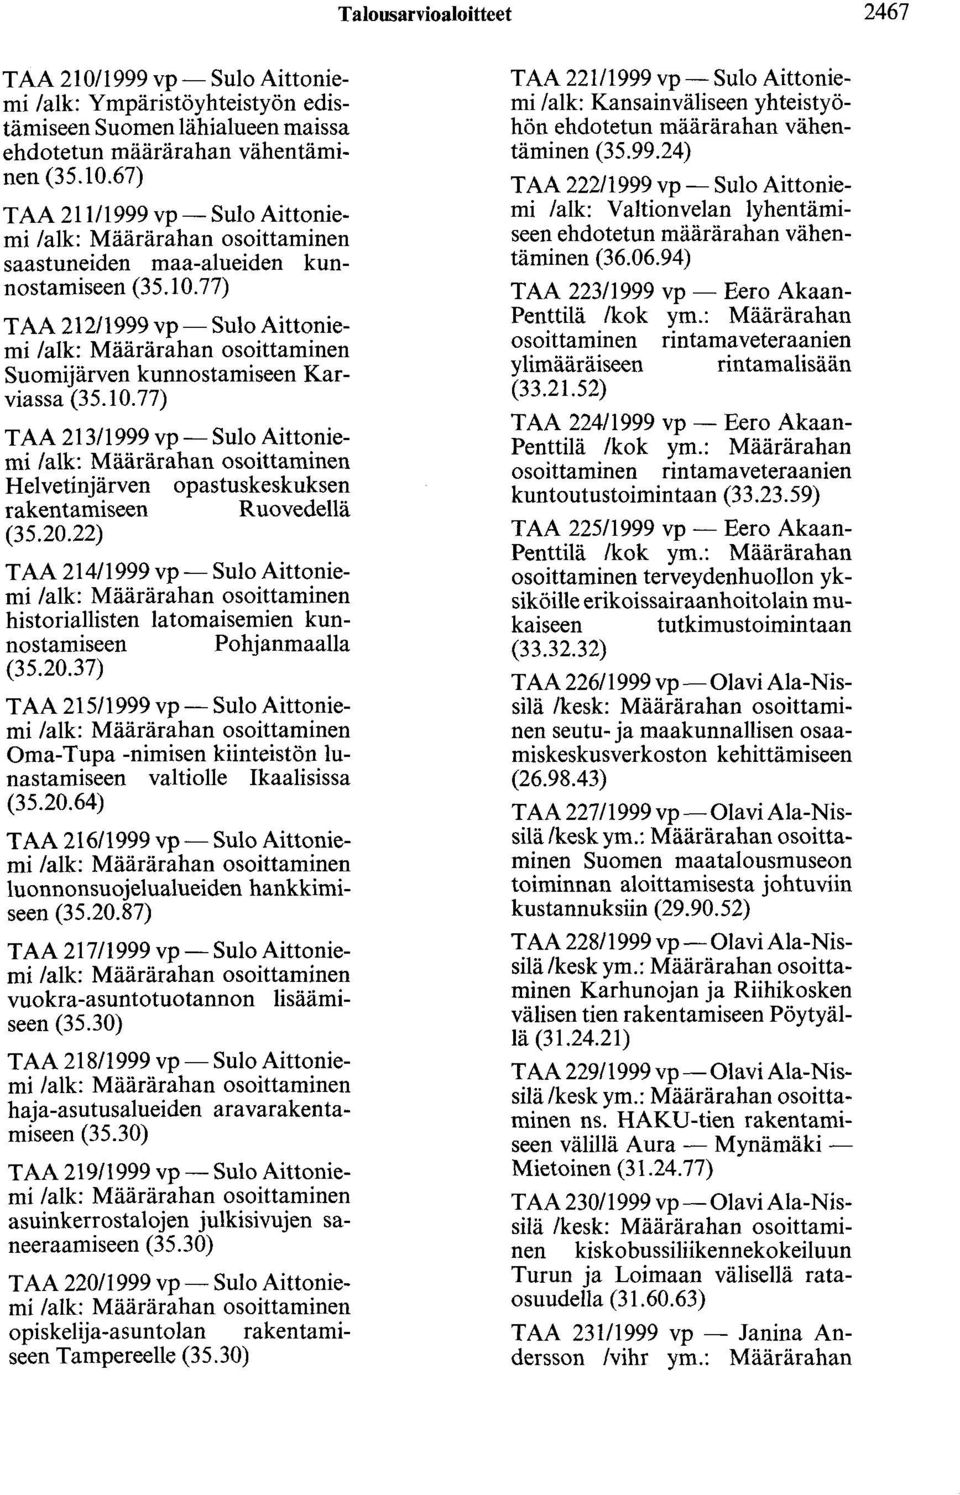 22) T AA 214/1999 vp- Sulo Aittoniemi historiallisten latomaisemien kunnostamiseen Pohjanmaalla (35.20.